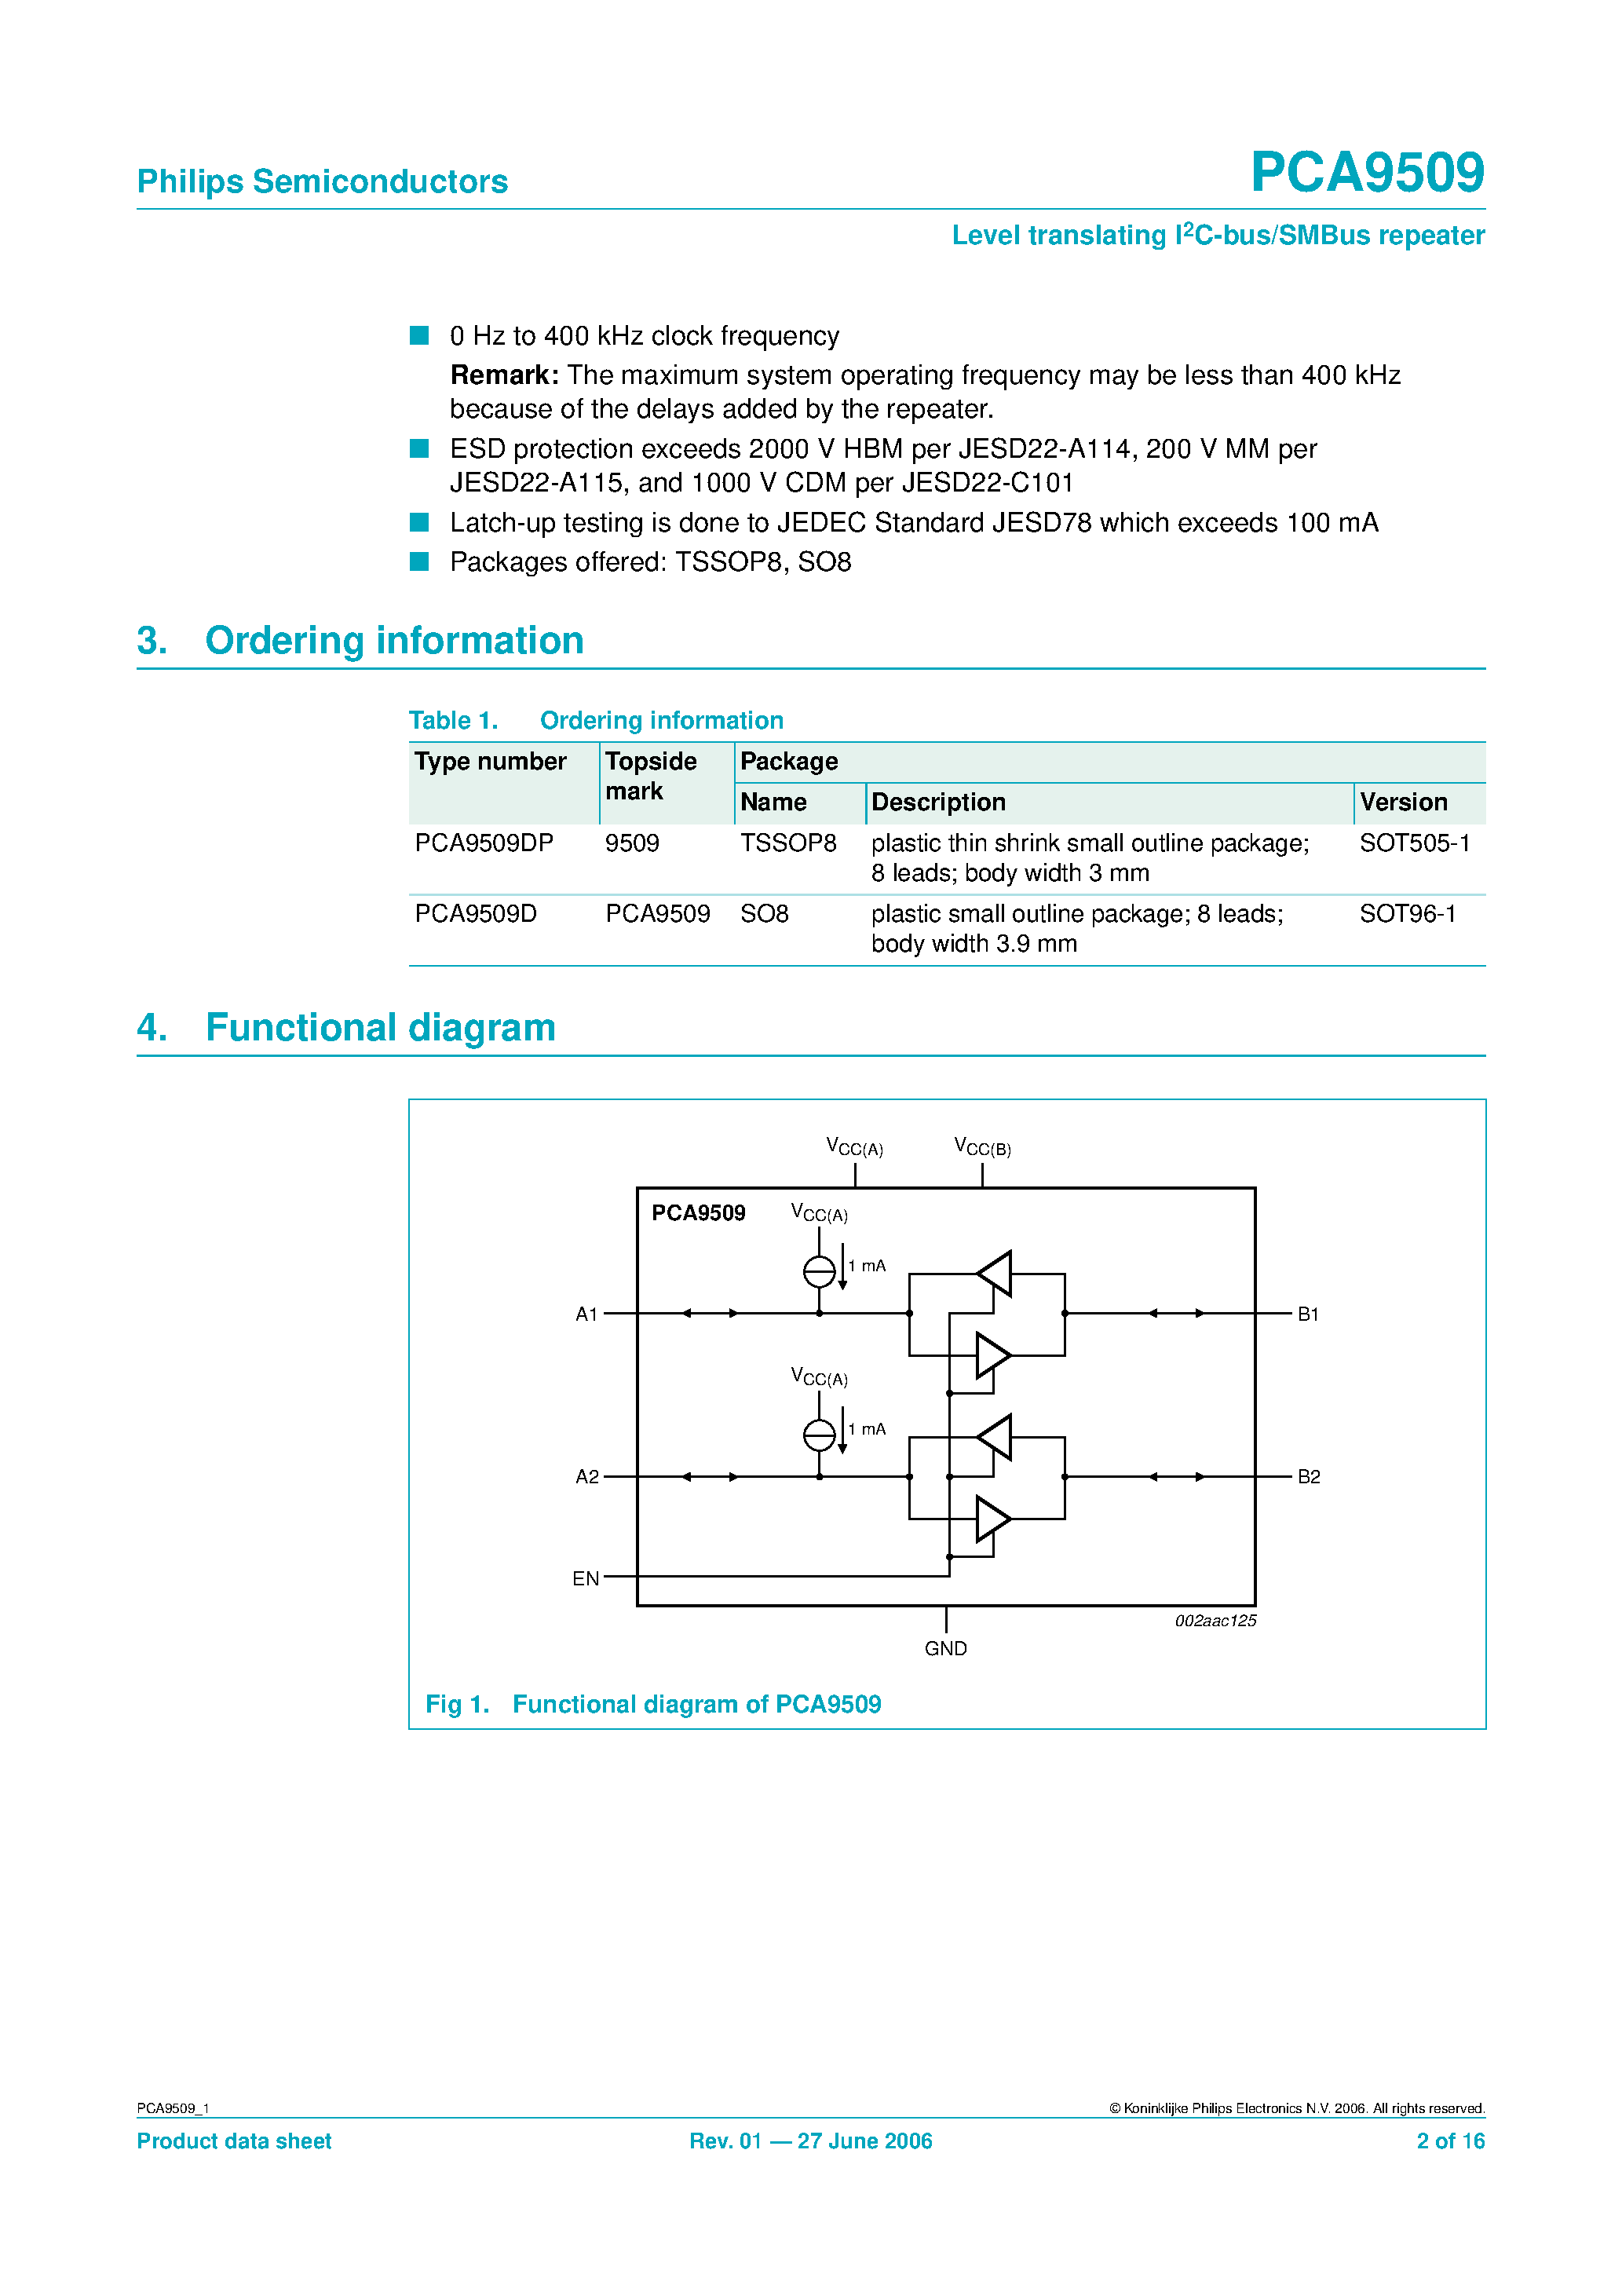 Datasheet PCA9509 - Level translating I2C-bus/SMBus repeater page 2